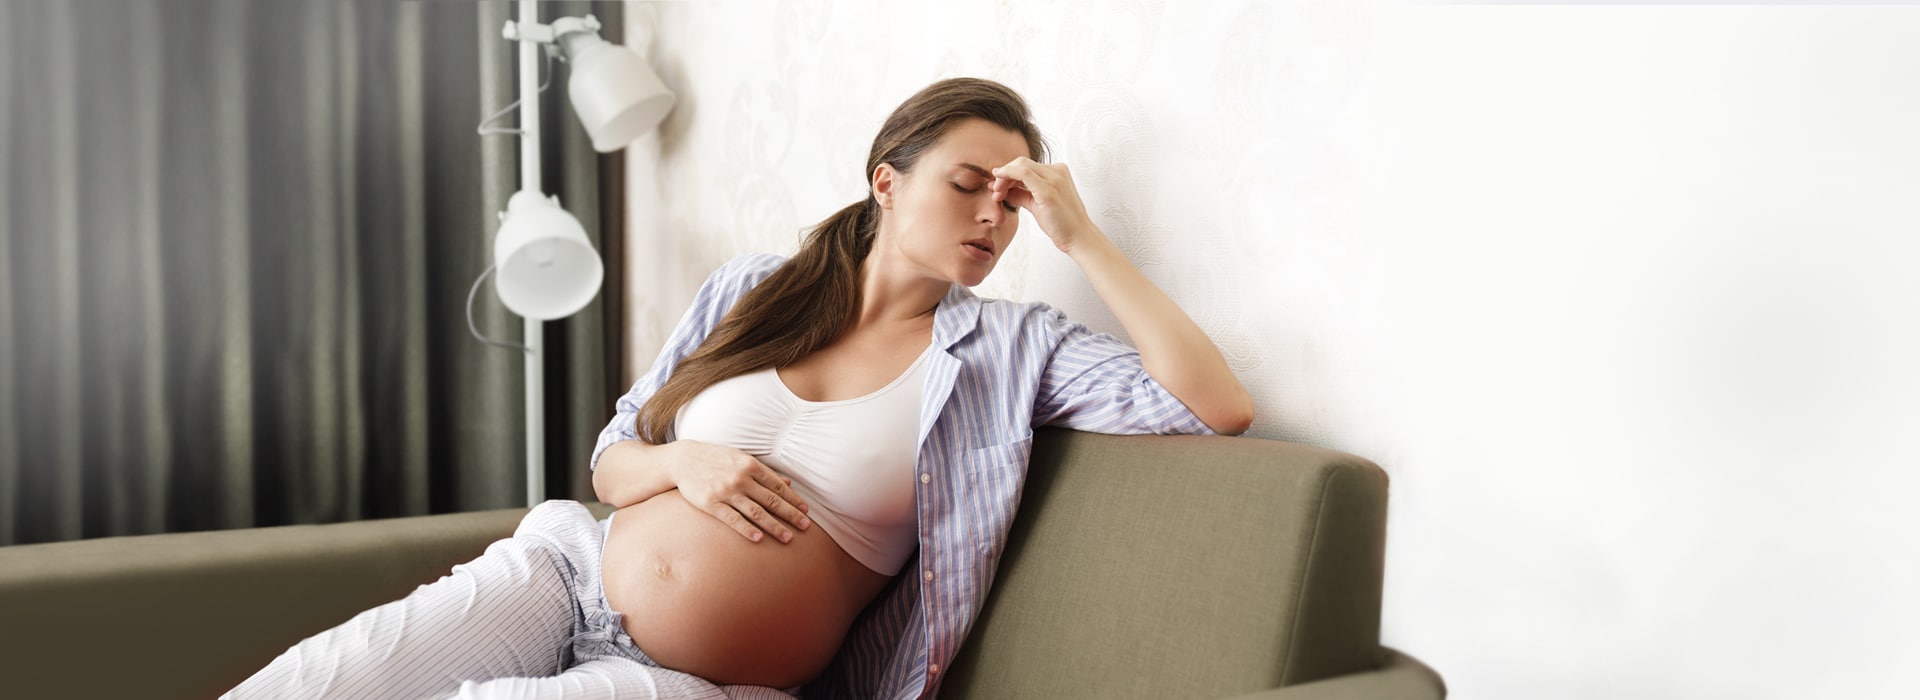 Dolori intercostali in gravidanza: cosa fare?